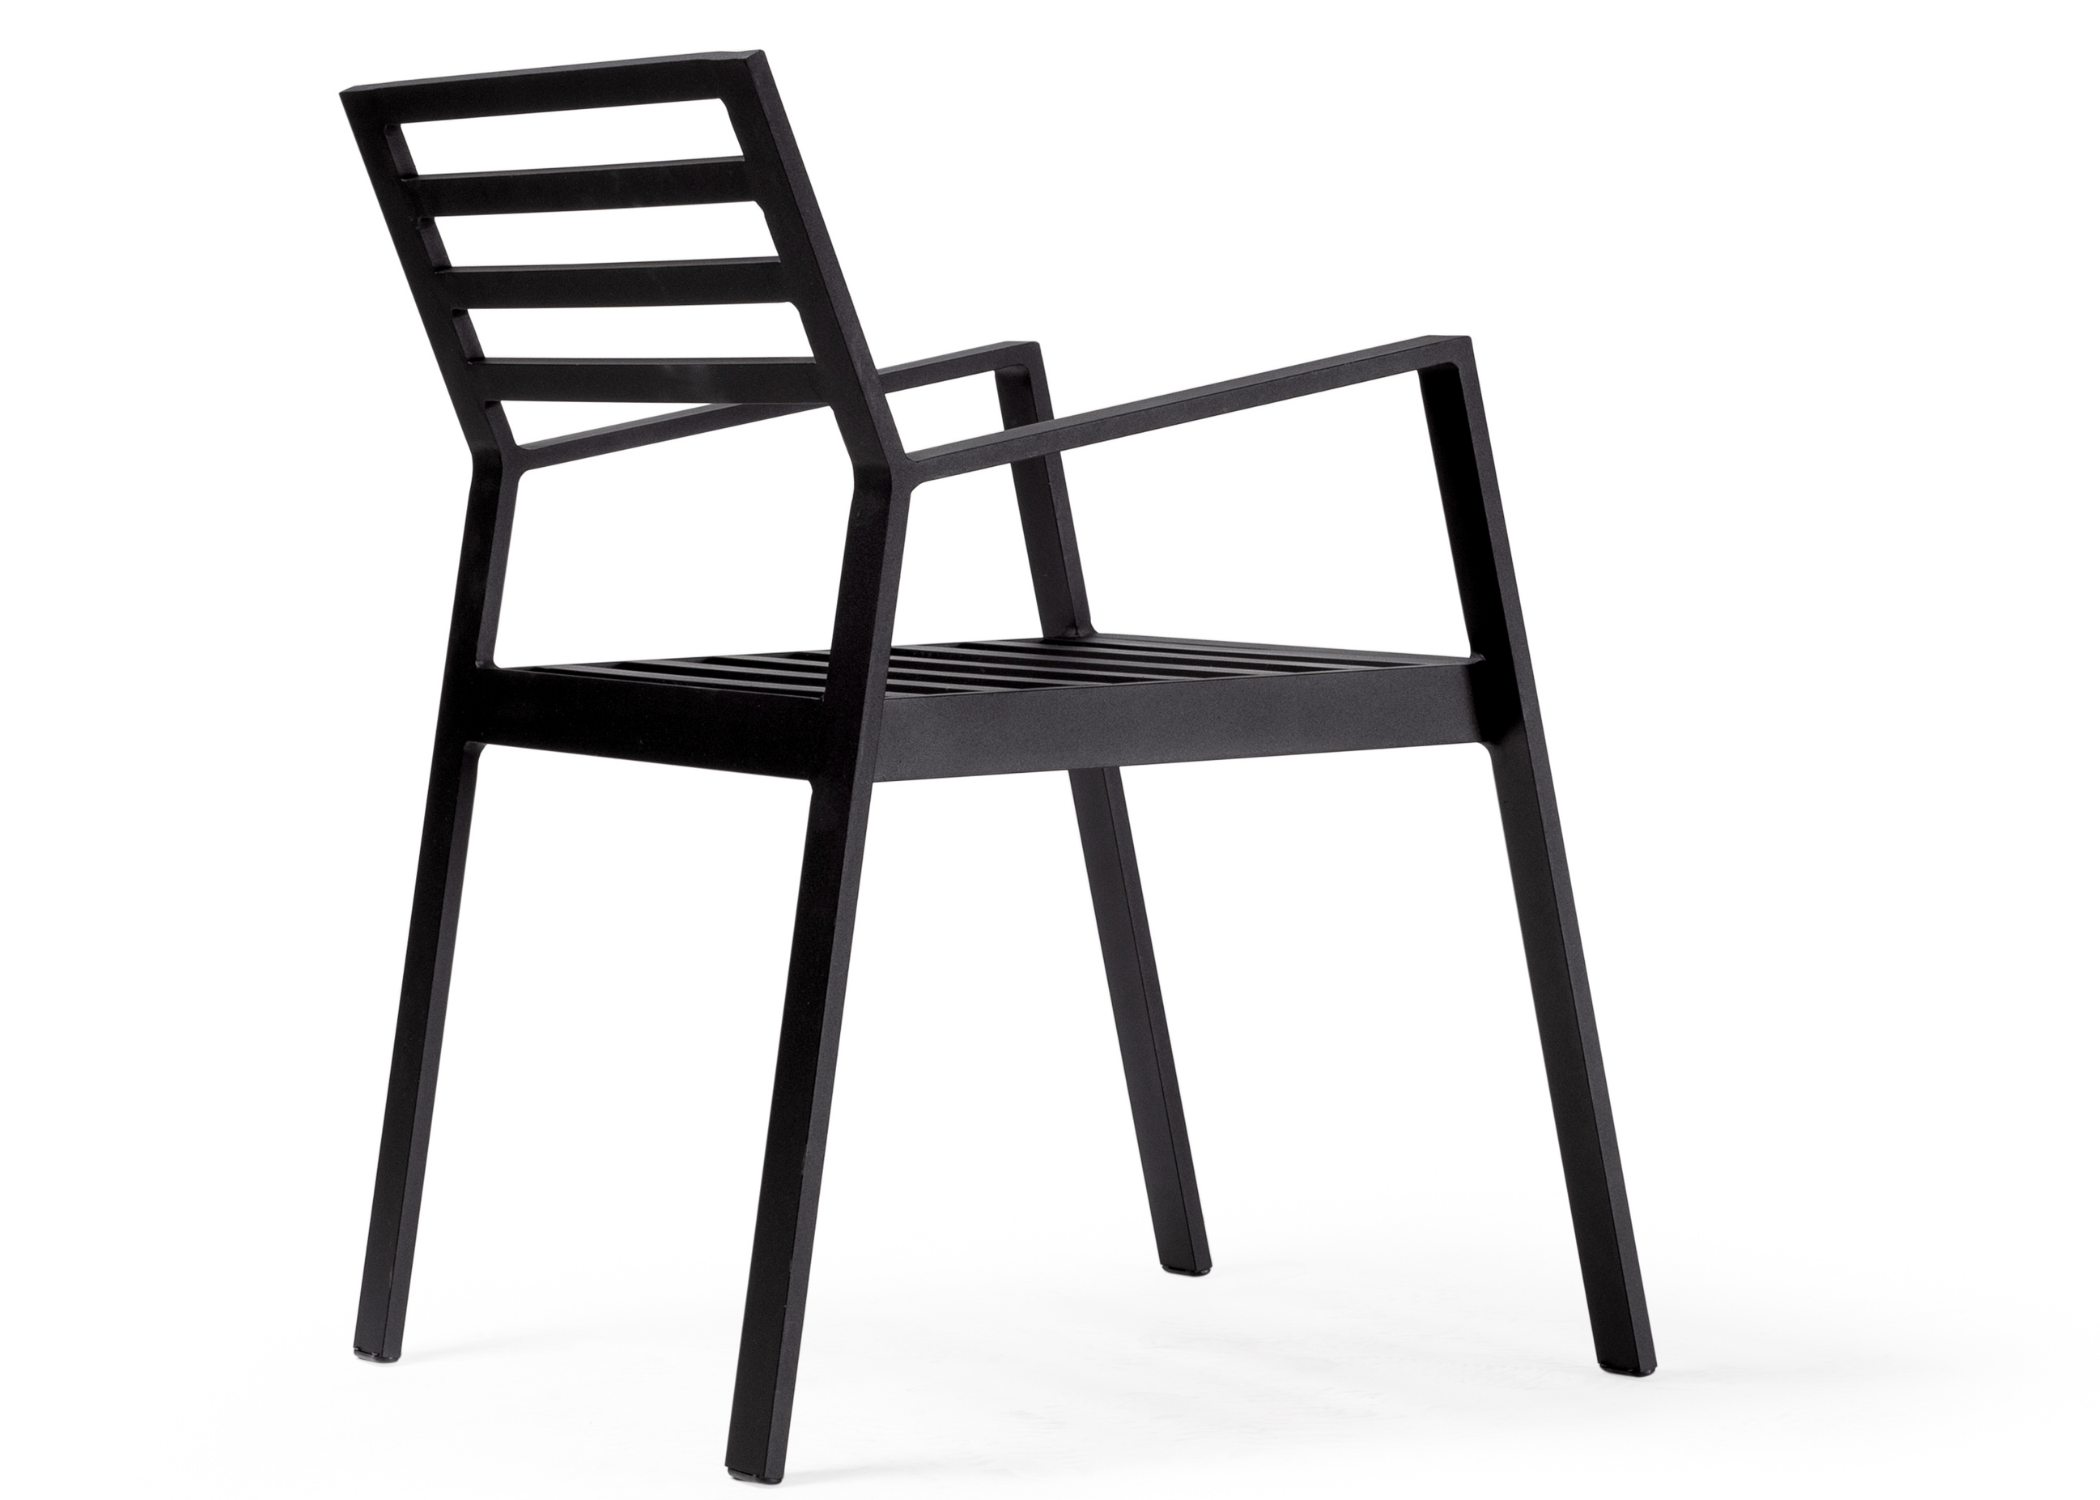 Detalhe da estrutura leve e resistente da Cadeira Zen em alumínio.